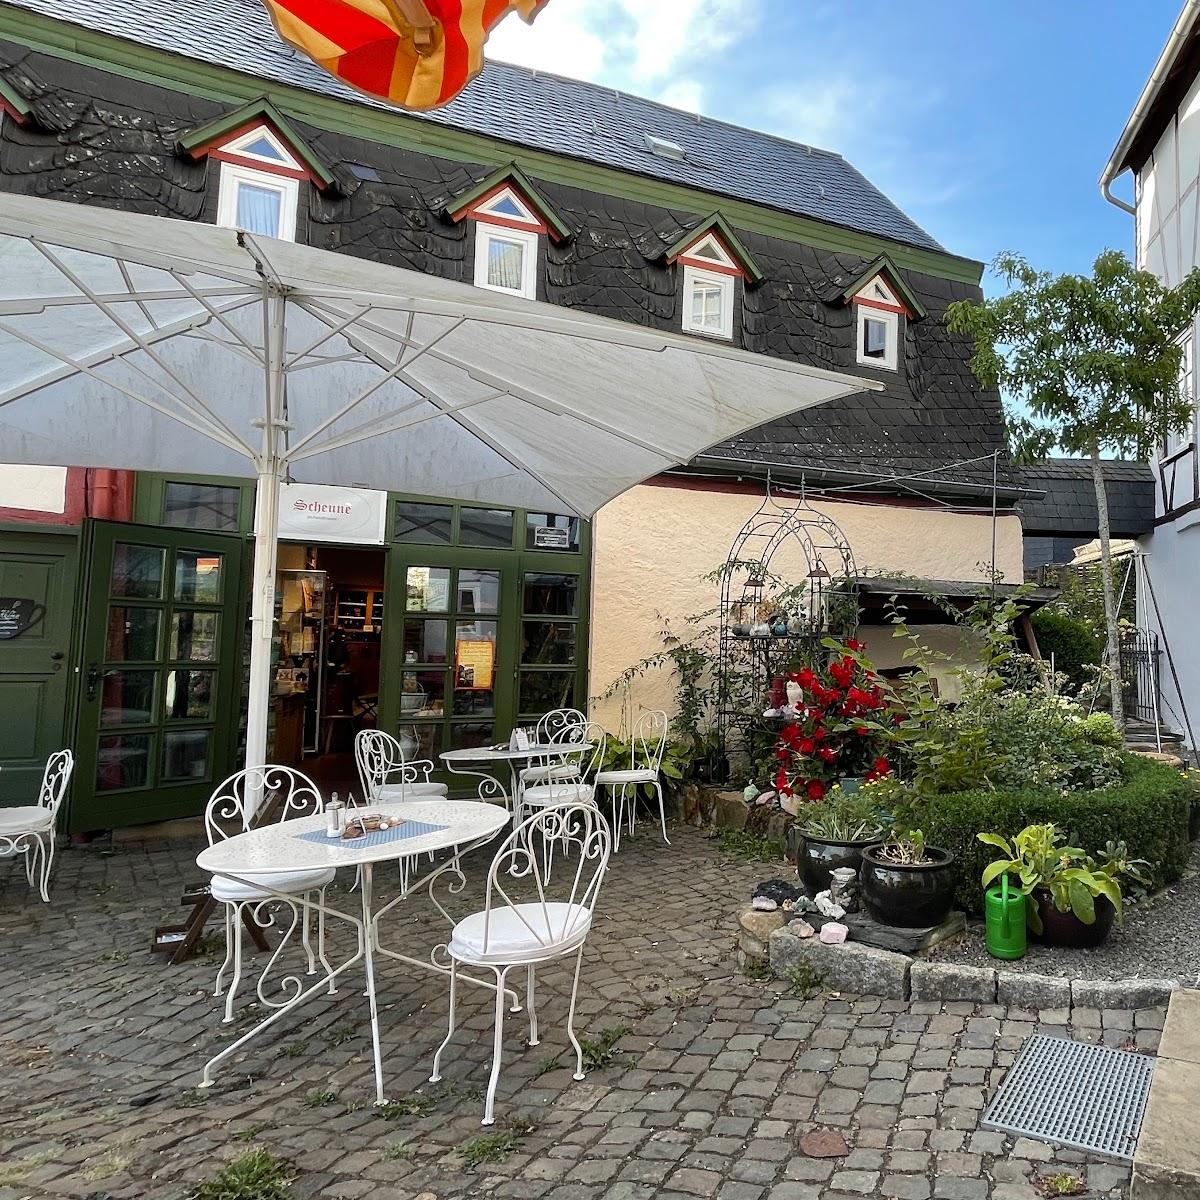 Restaurant "Scheune am Hankelbrunnen" in Herrstein